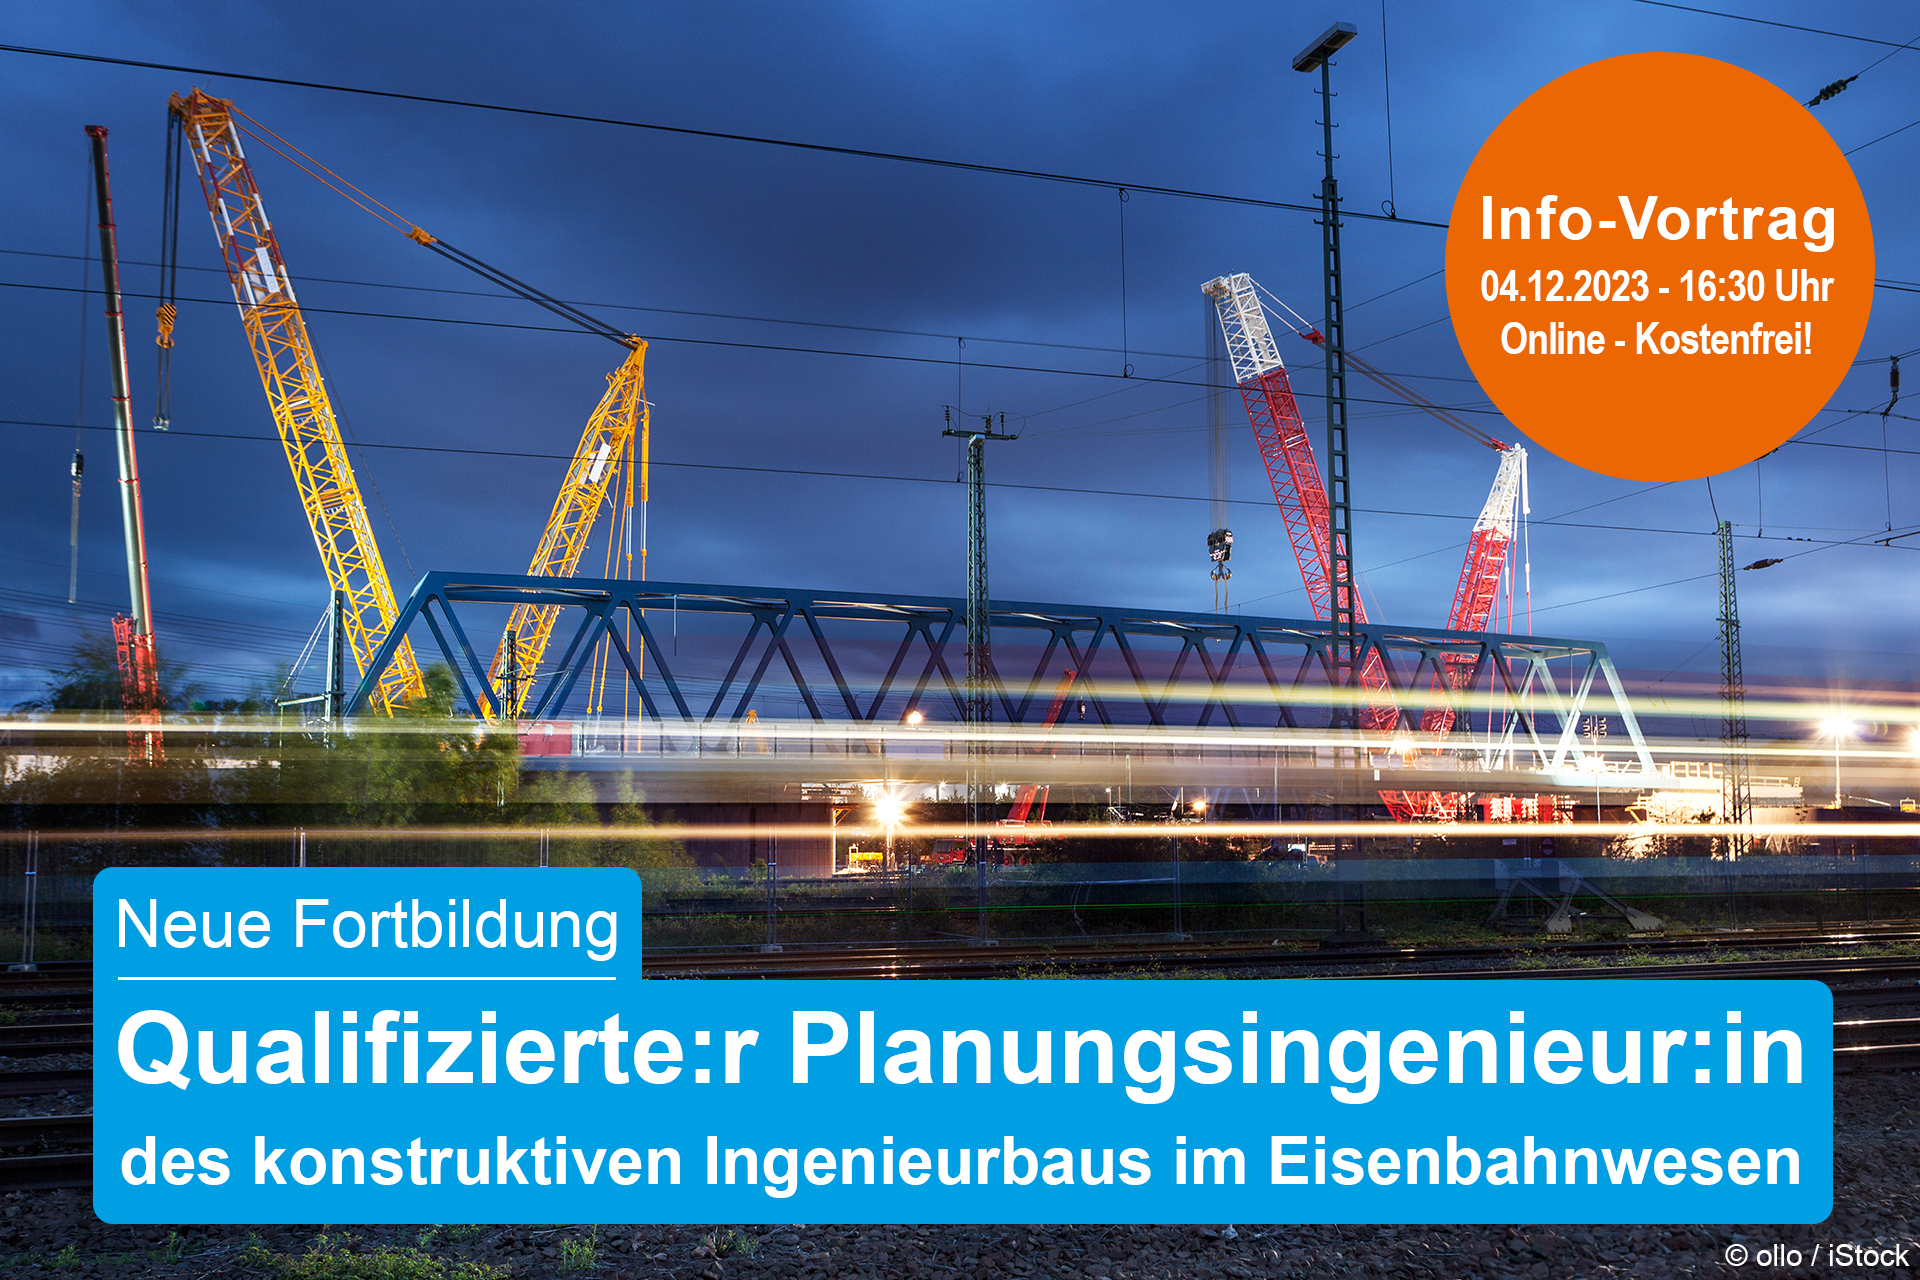 Info-Vortrag Lehrgang Qualifizierte:r Planungsingenieur:in des konstruktiven Ingenieurbaus im Eisenbahnwesen  (Online)